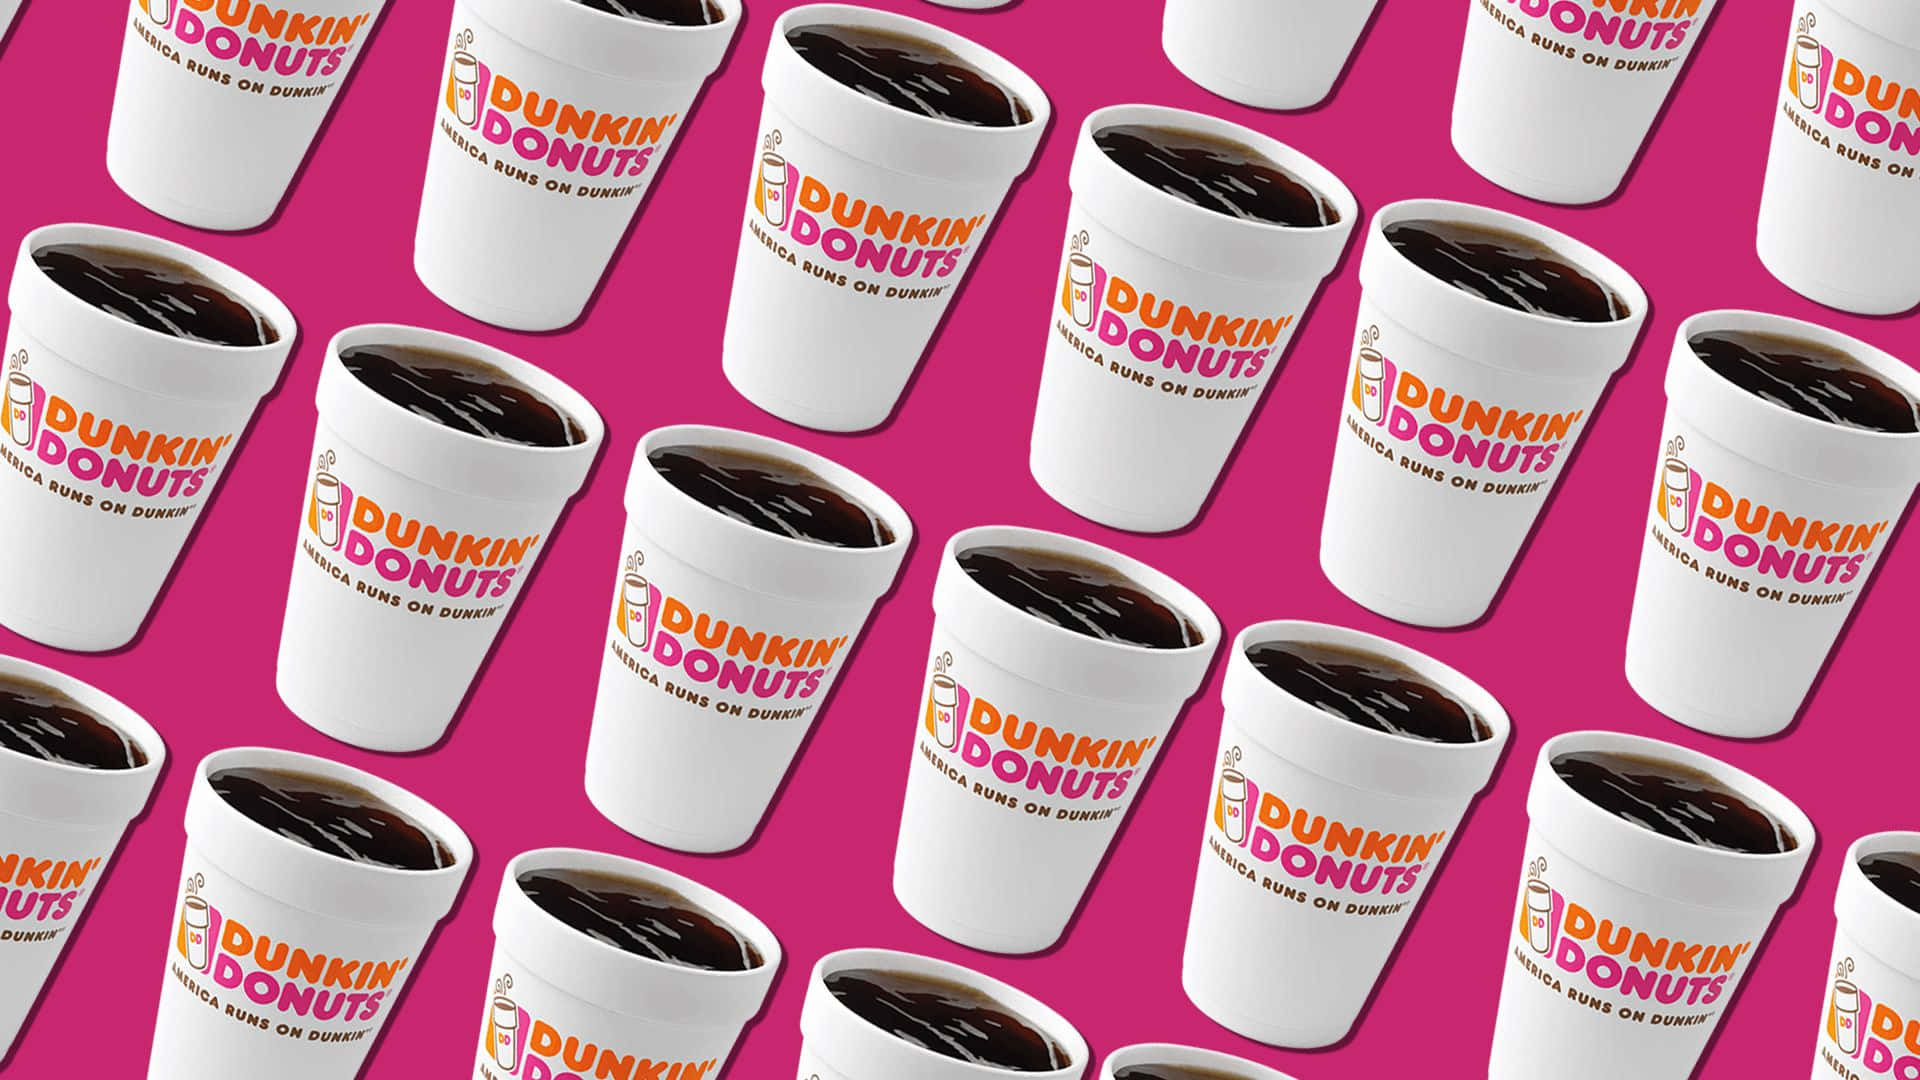 Holensie Sich Ihren Koffeinkick Und Mehr Bei Dunkin Donuts!